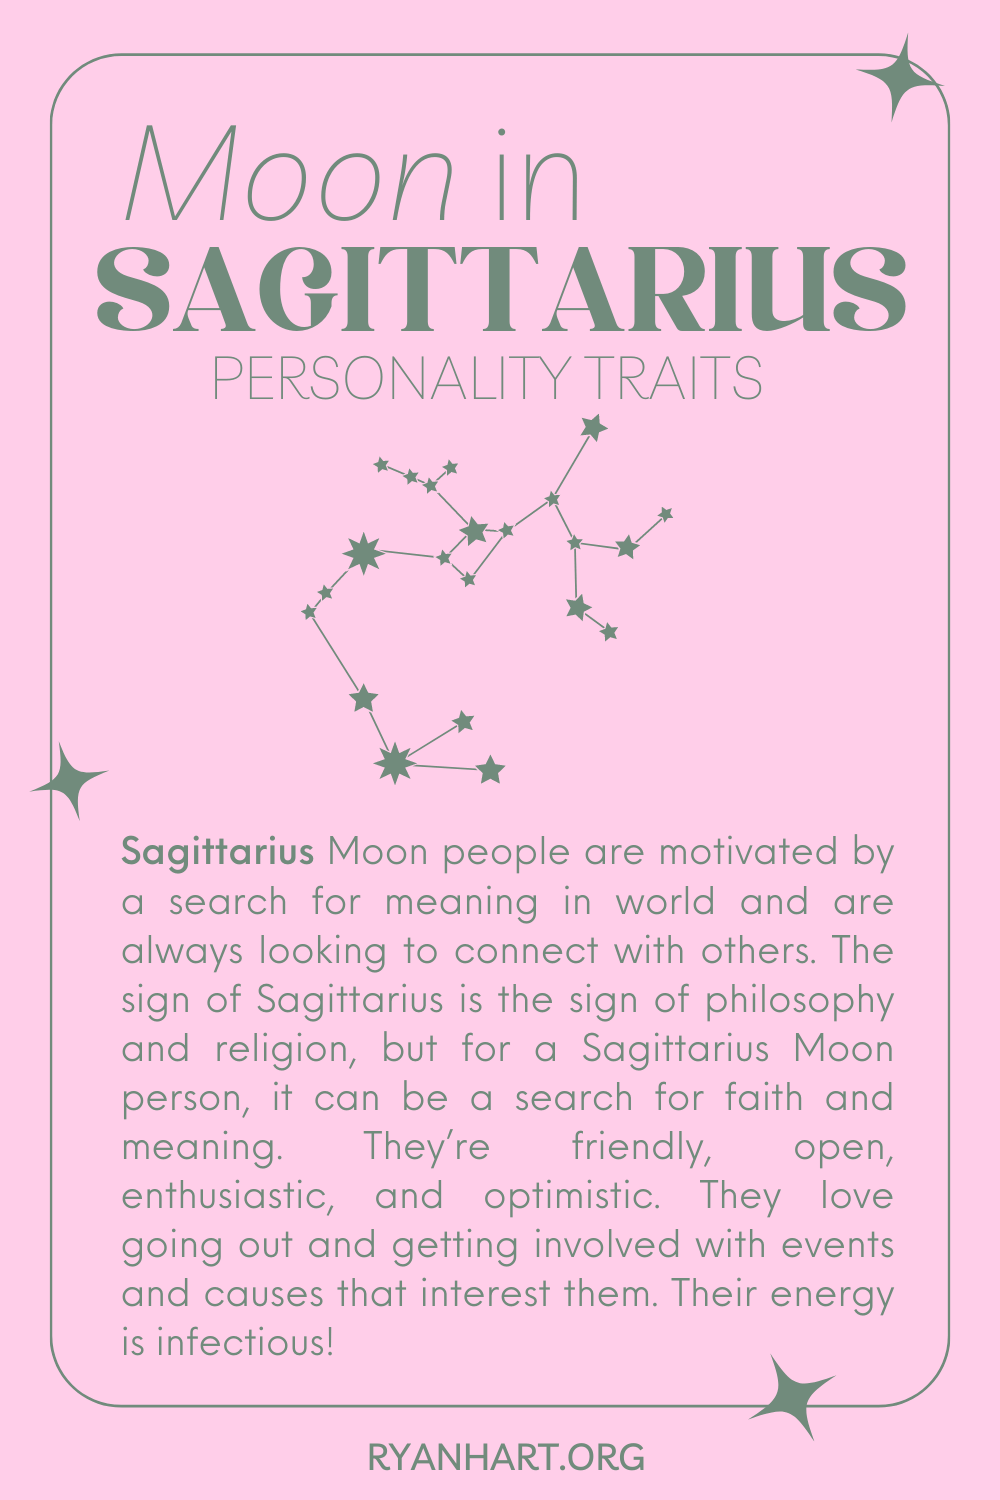  Sagittarius လ လက္ခဏာများ စရိုက်လက္ခဏာများ